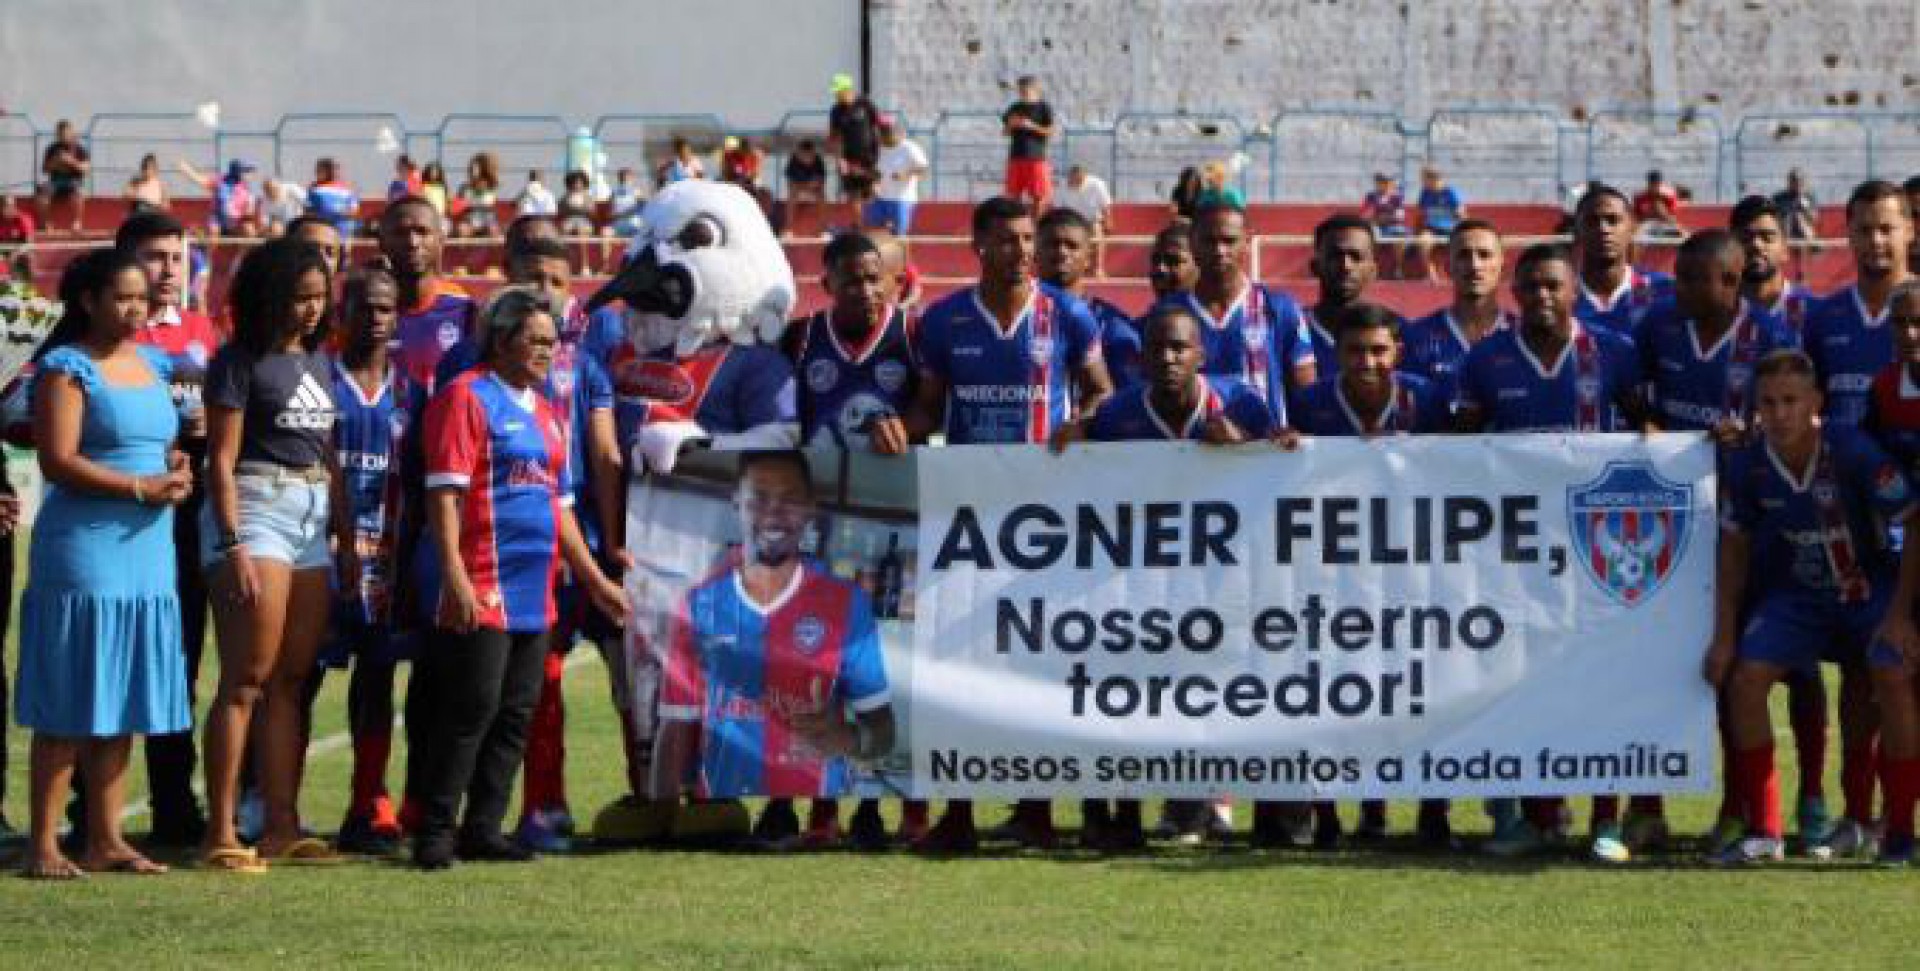 Os jogadores homenagearam com uma faixa o torcedor Agner Felipe, que infelizmente morreu em um acidente de moto - Edson VHL / SEBR